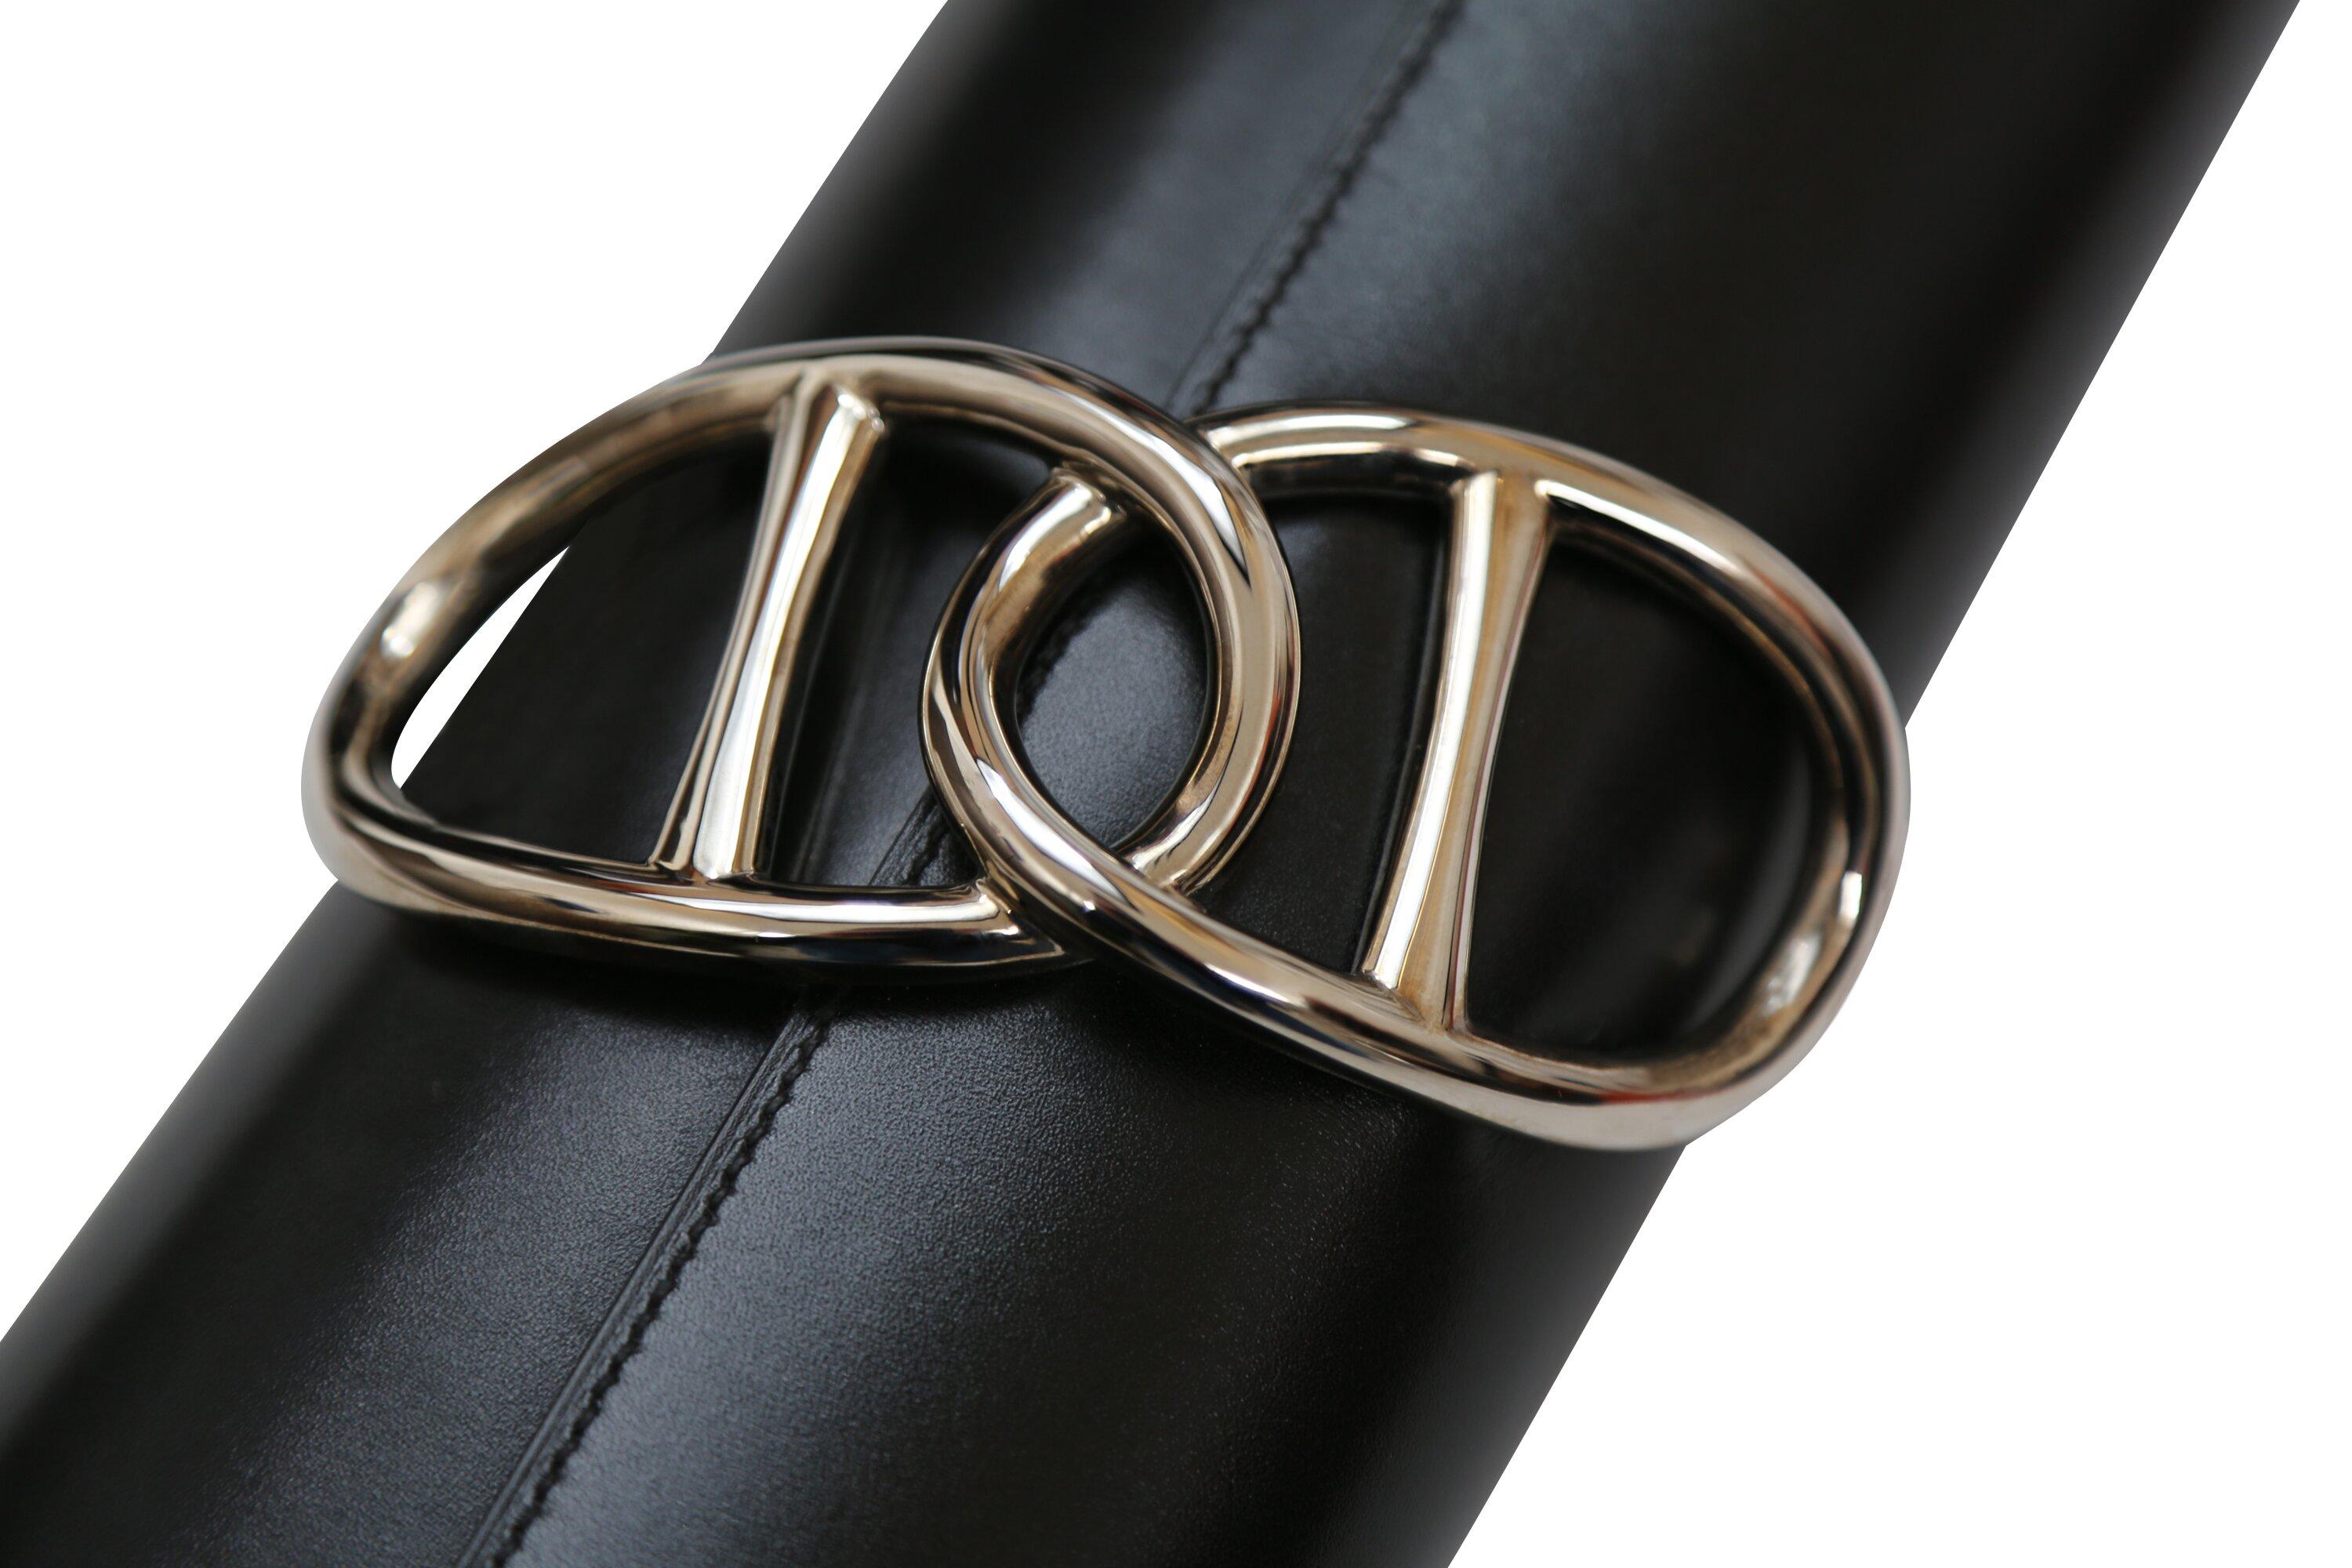 La pochette noire Egee d'Hermès est un accessoire authentique et élégant, composé de cuir de veau lisse noir et d'une chaîne d'Ancre en palladium argenté doublement polie. Son intérieur en cuir assorti ajoute une touche de luxe.

Tous les articles